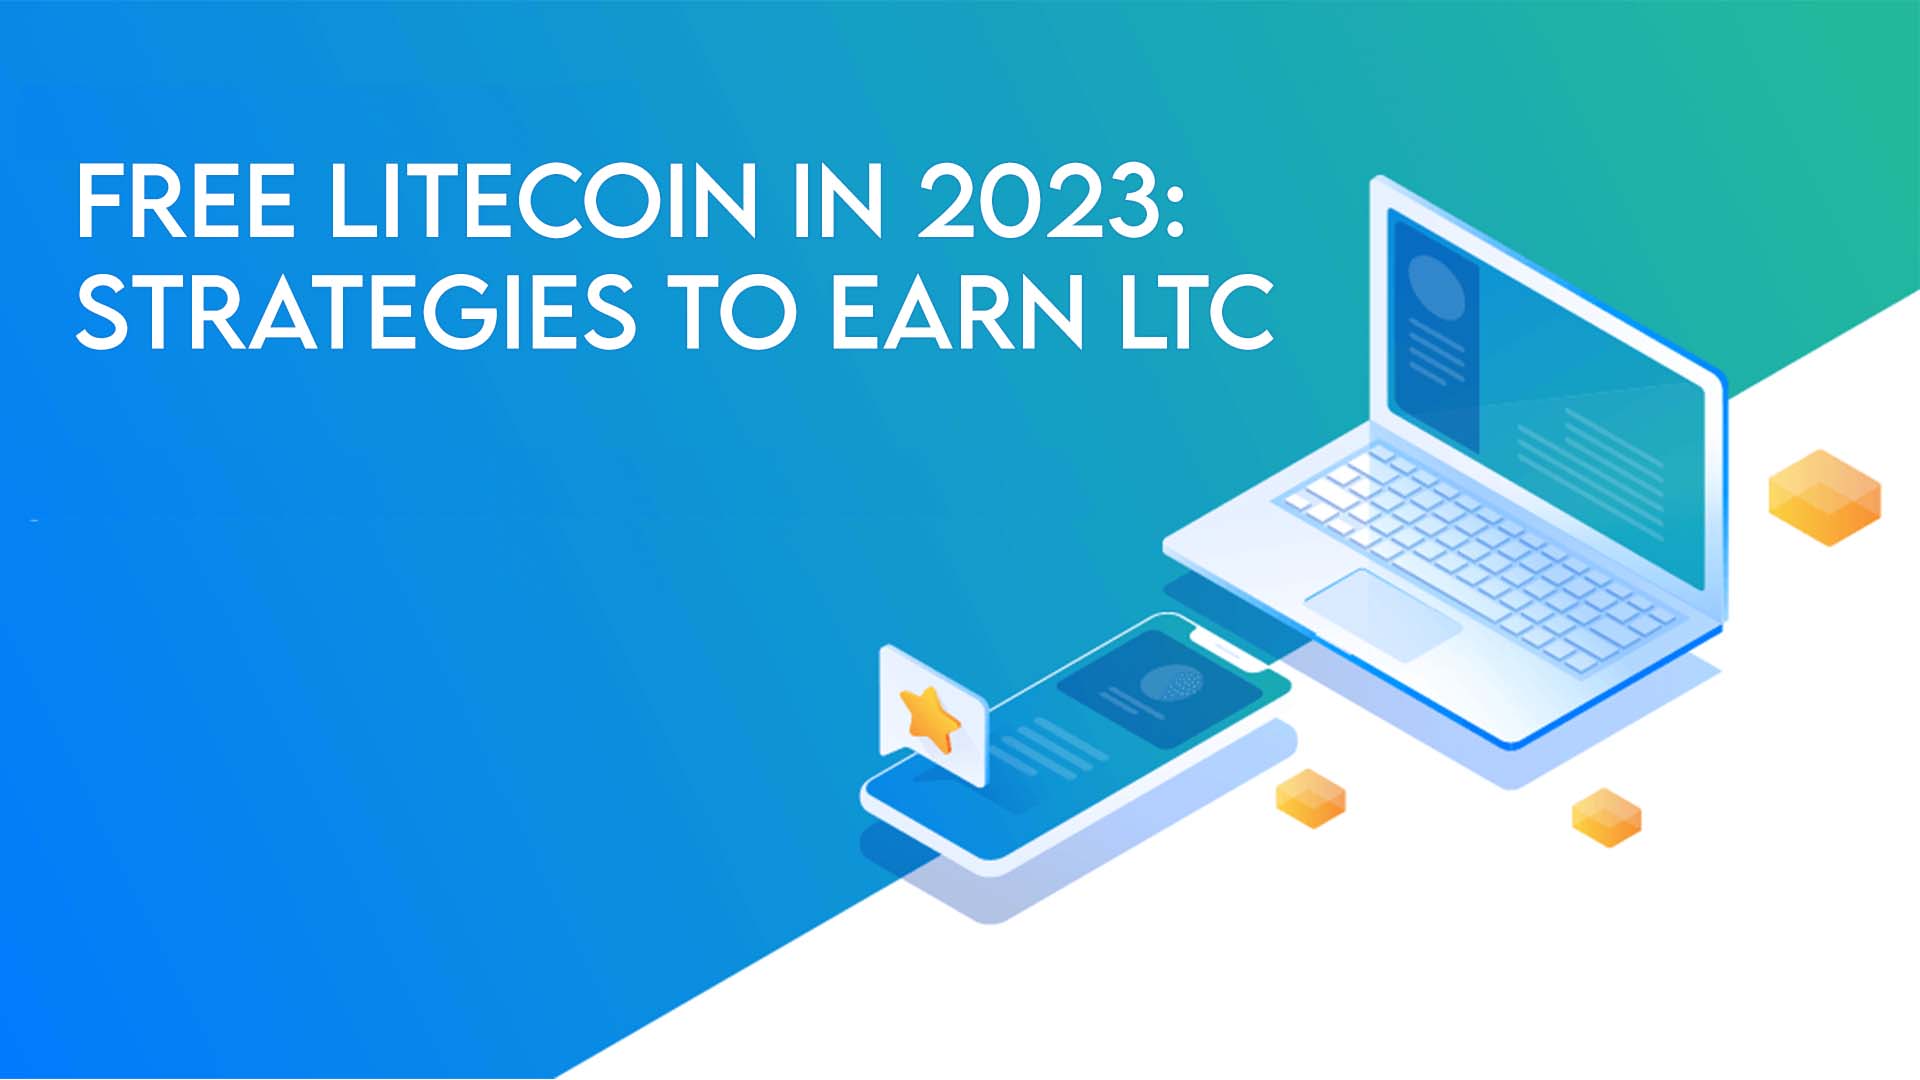 Free Litecoin in 2023: Strategies to Earn LTC